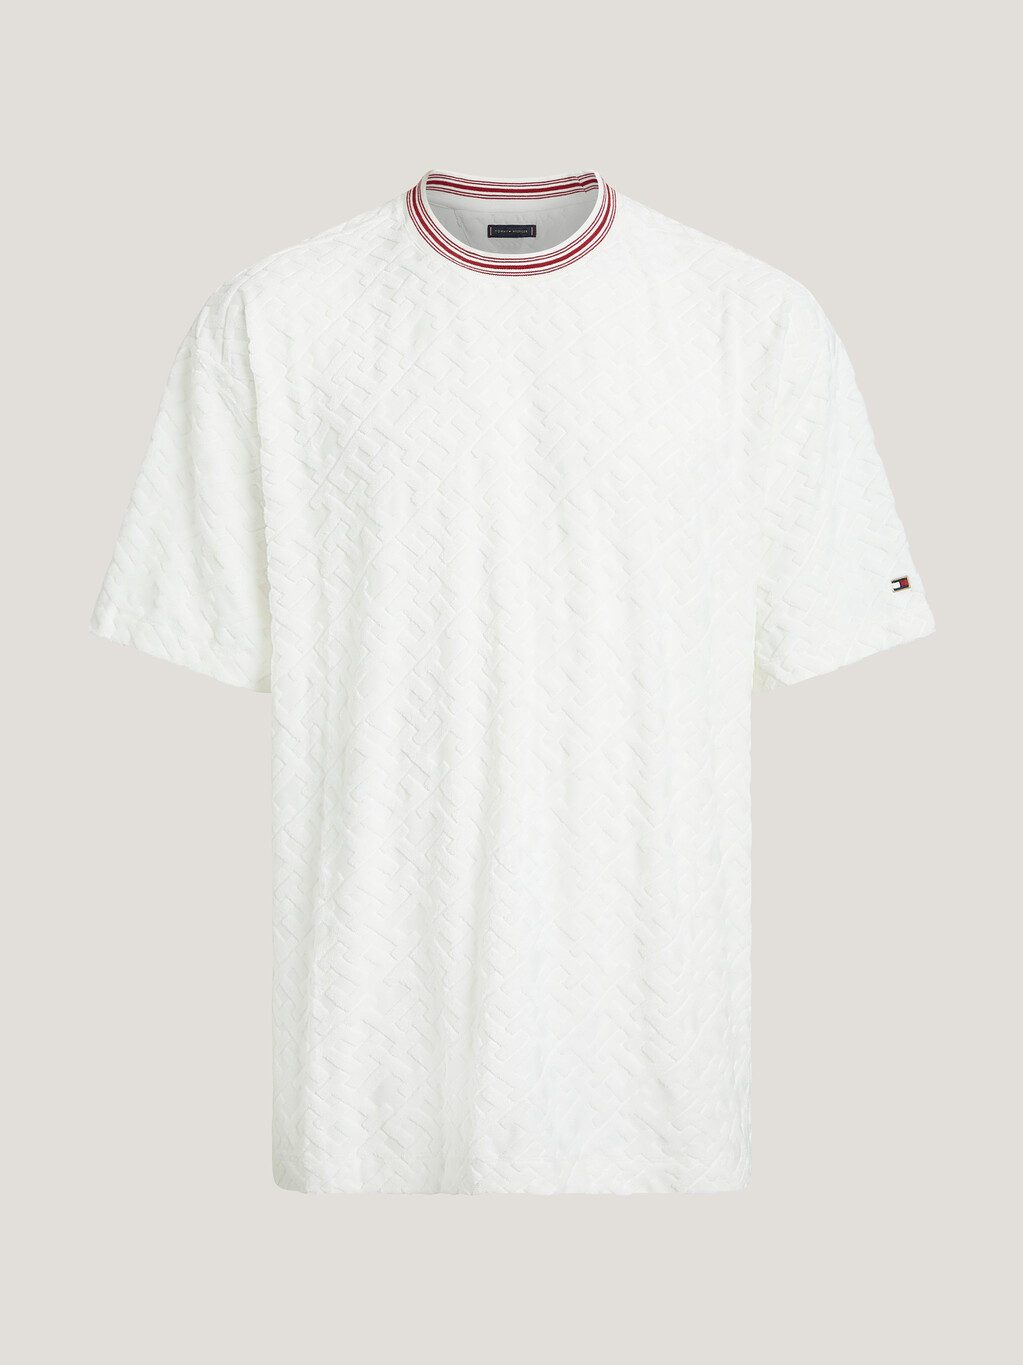 CNY TH Monogram Crewneck T-Shirt, Ecru, hi-res